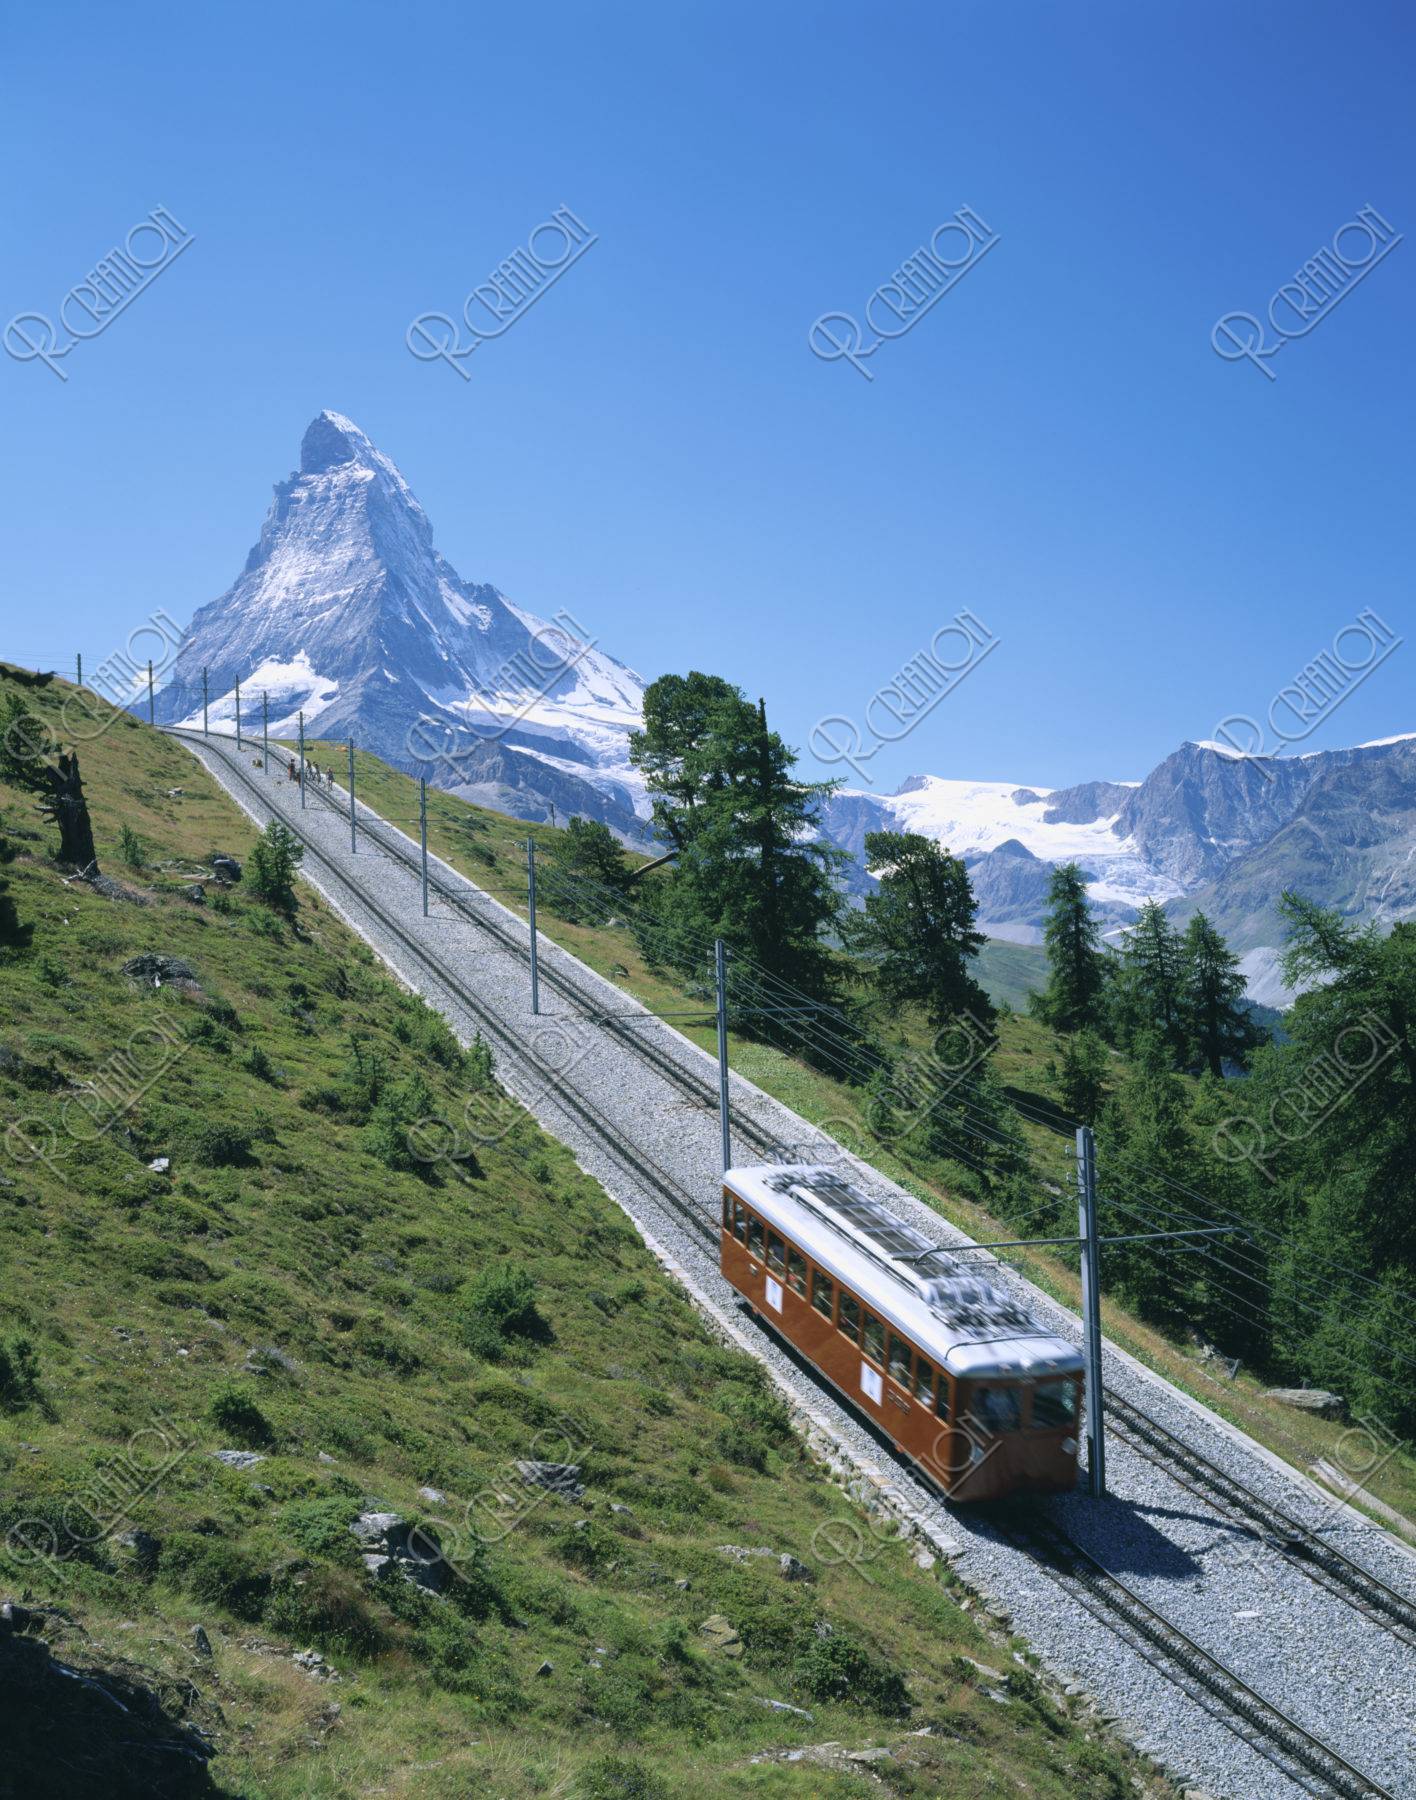 マッターホルンと登山電車